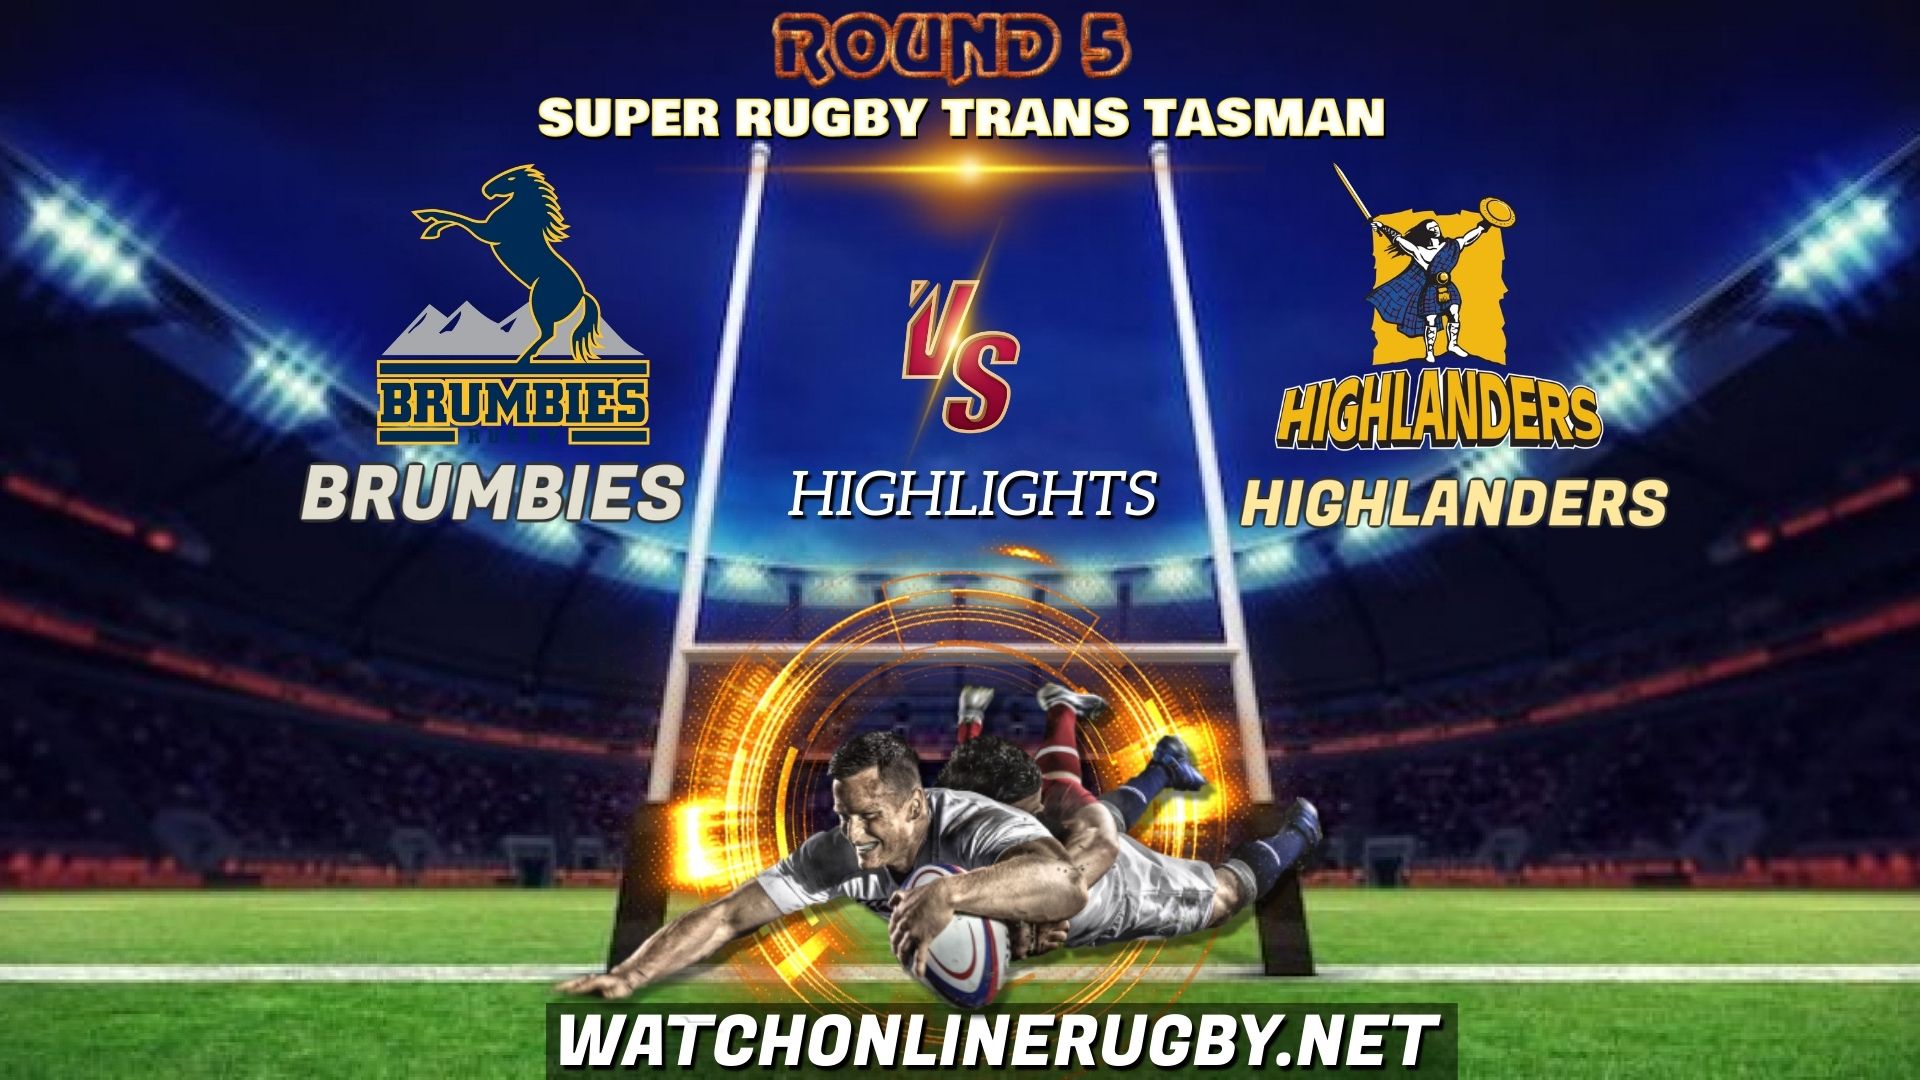 Brumbies Vs Highlanders Super Rugby Trans Tasman 2021 RD 5